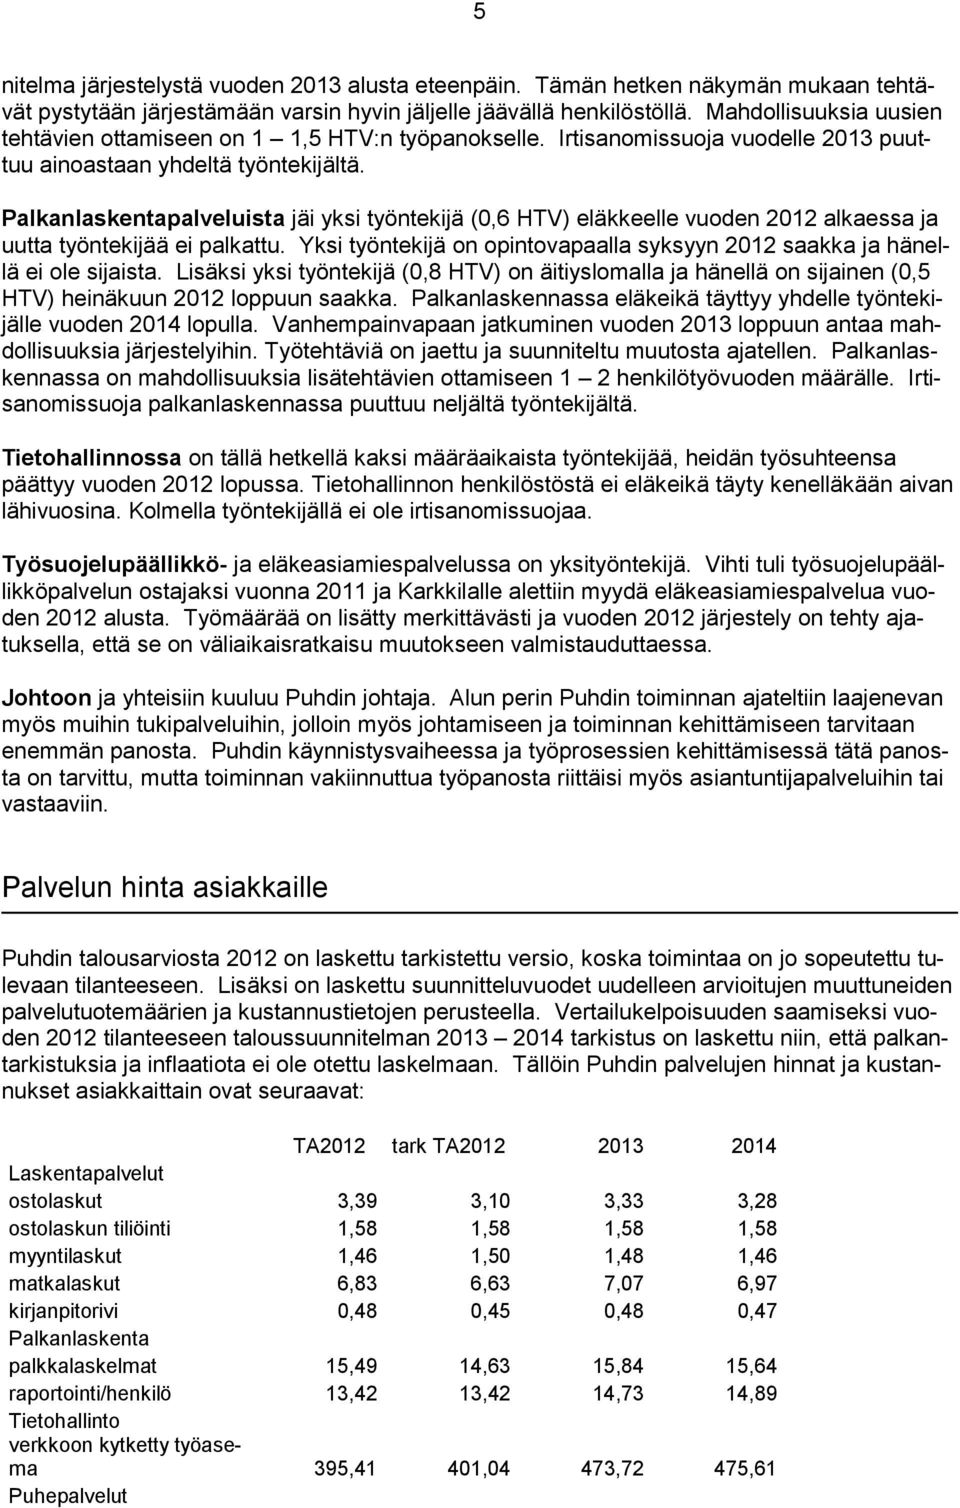 Palkanlaskentapalveluista jäi yksi työntekijä (0,6 HTV) eläkkeelle vuoden 2012 alkaessa ja uutta työntekijää ei palkattu.